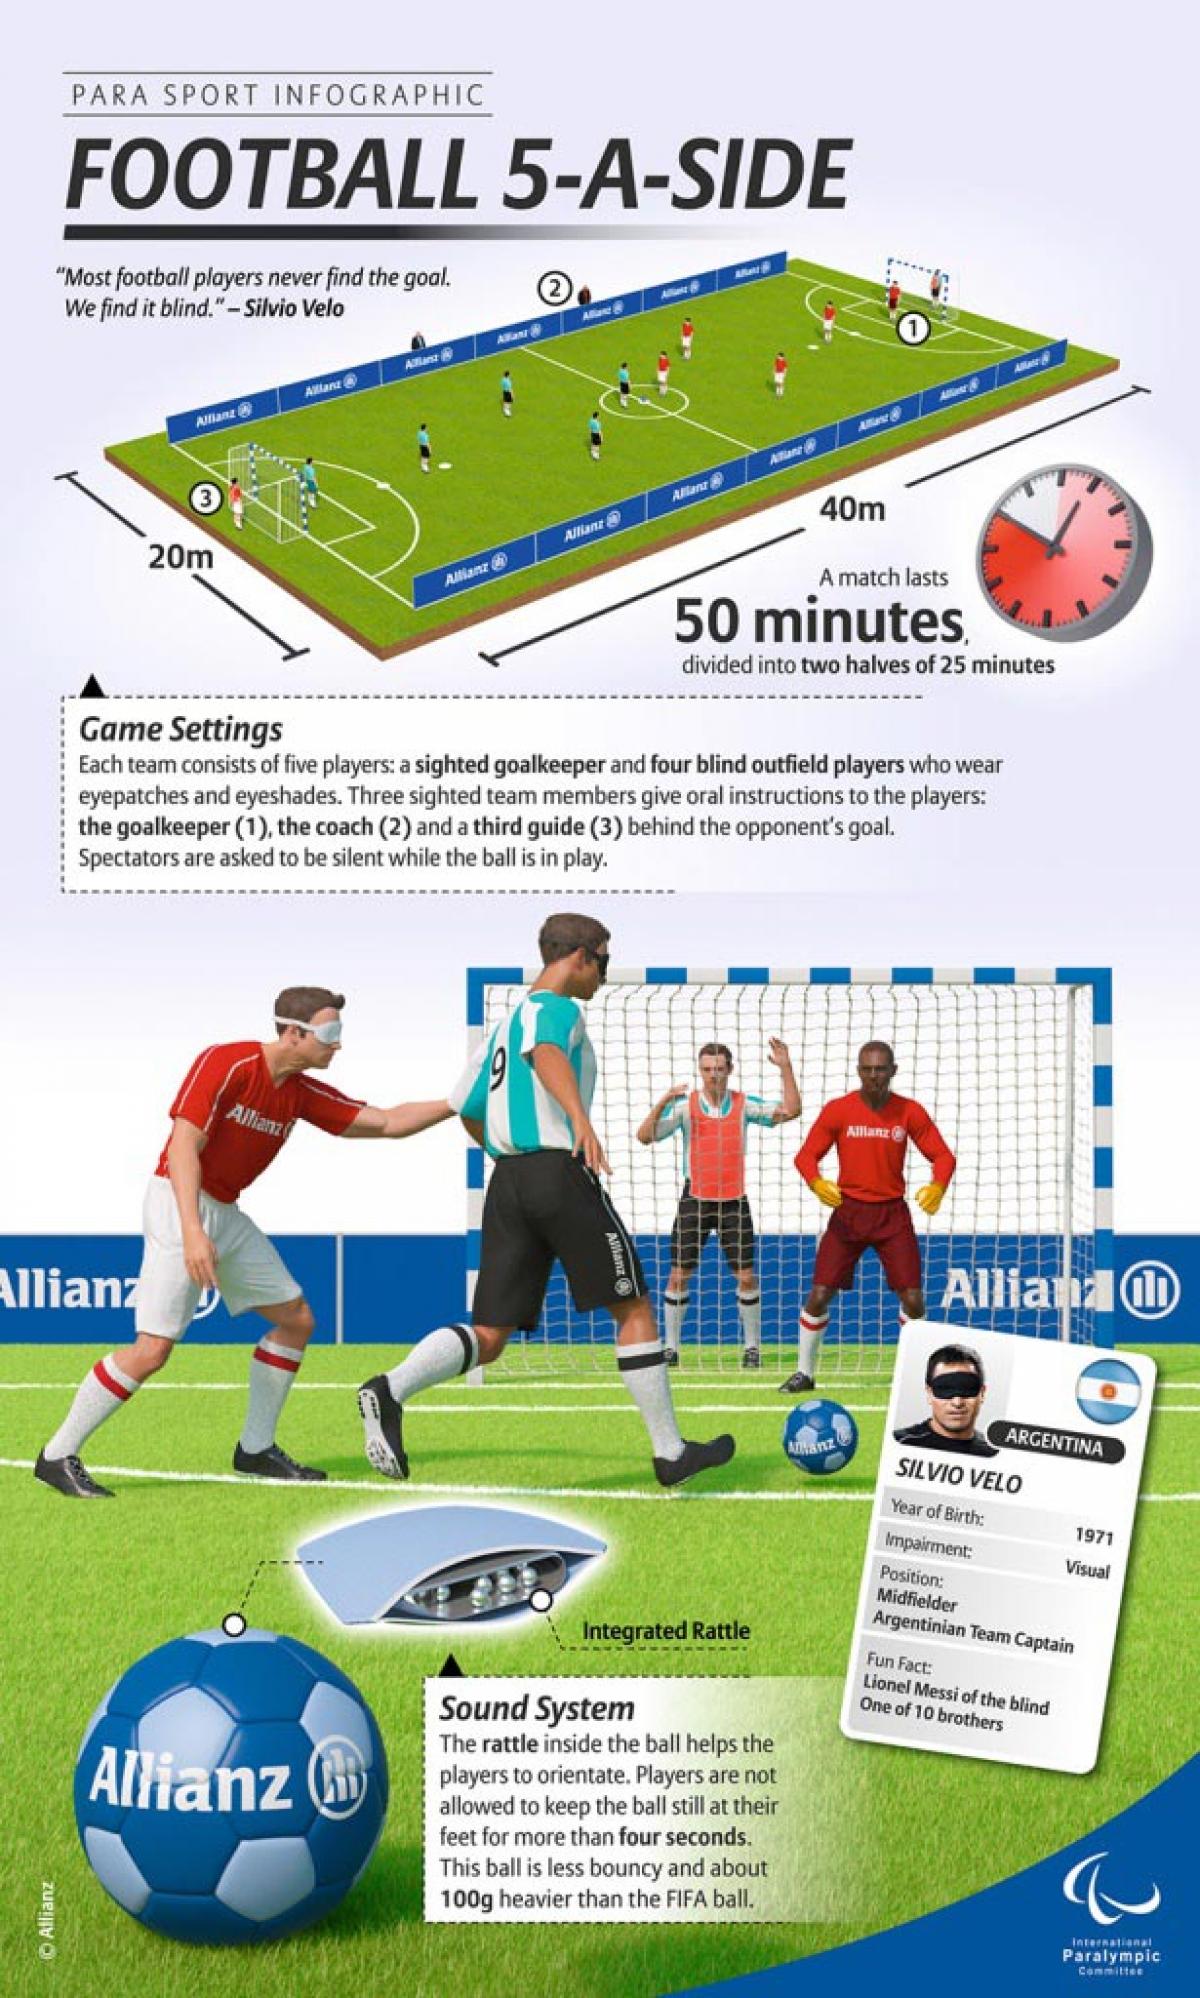 Allianz Para Sport Infographics - Football 5-a-side